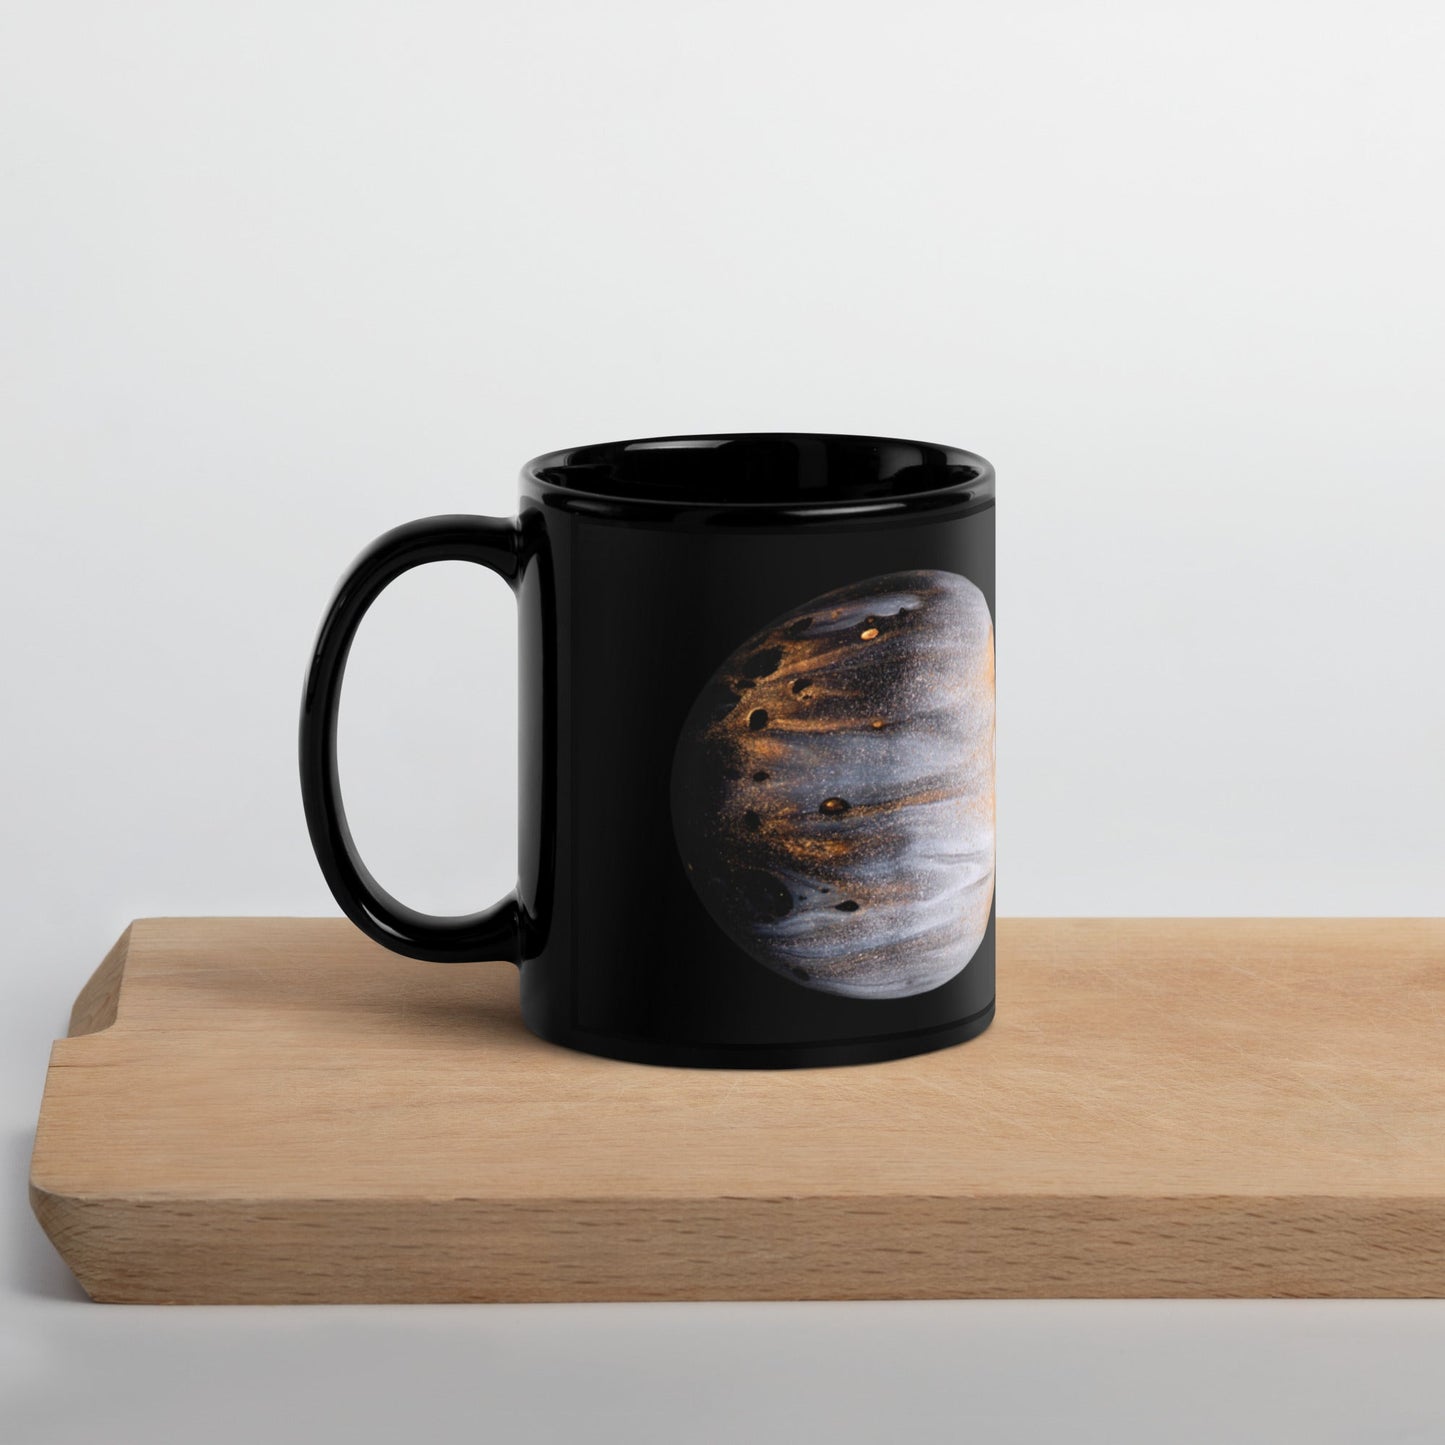 bonotee.com: Enamel mug, black mug, travel mug, photo mug, glass mug, cool mugs, enamel coffee mug, coffee mug, mugs